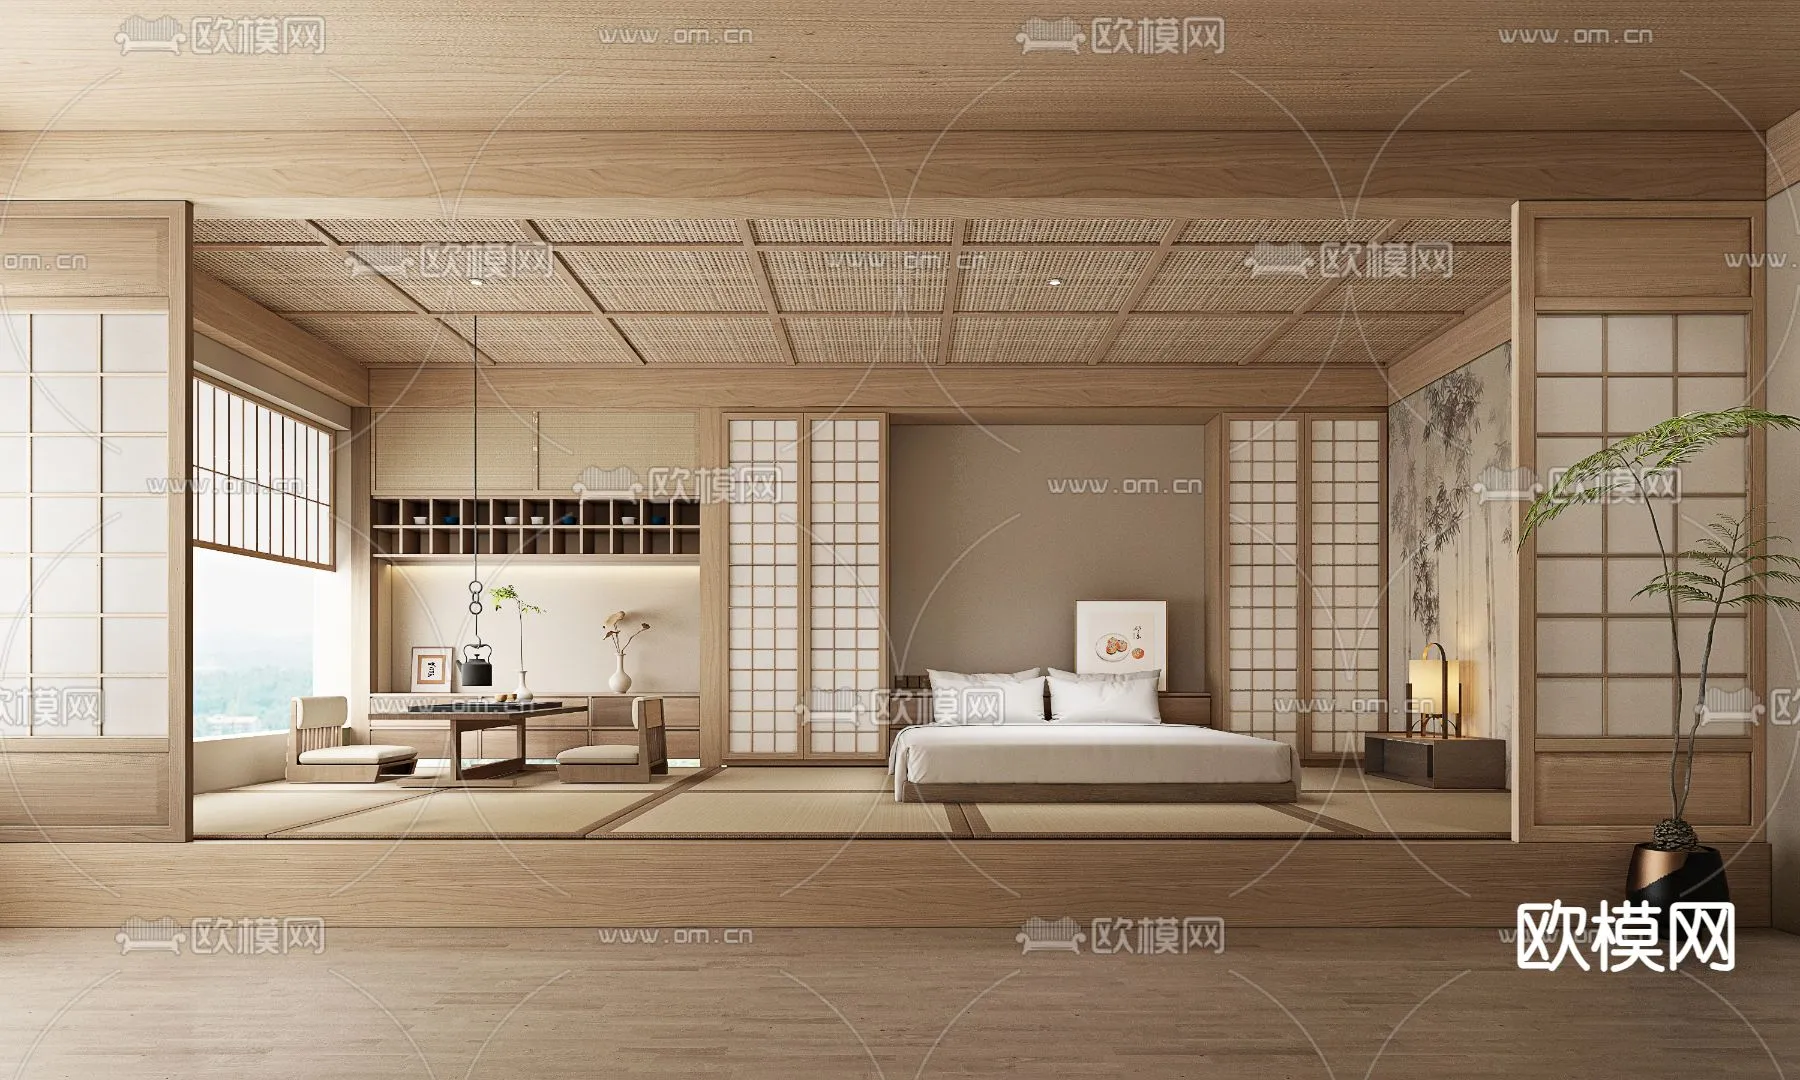 Hotel Room – Bedroom For Hotel 3D Models – 004